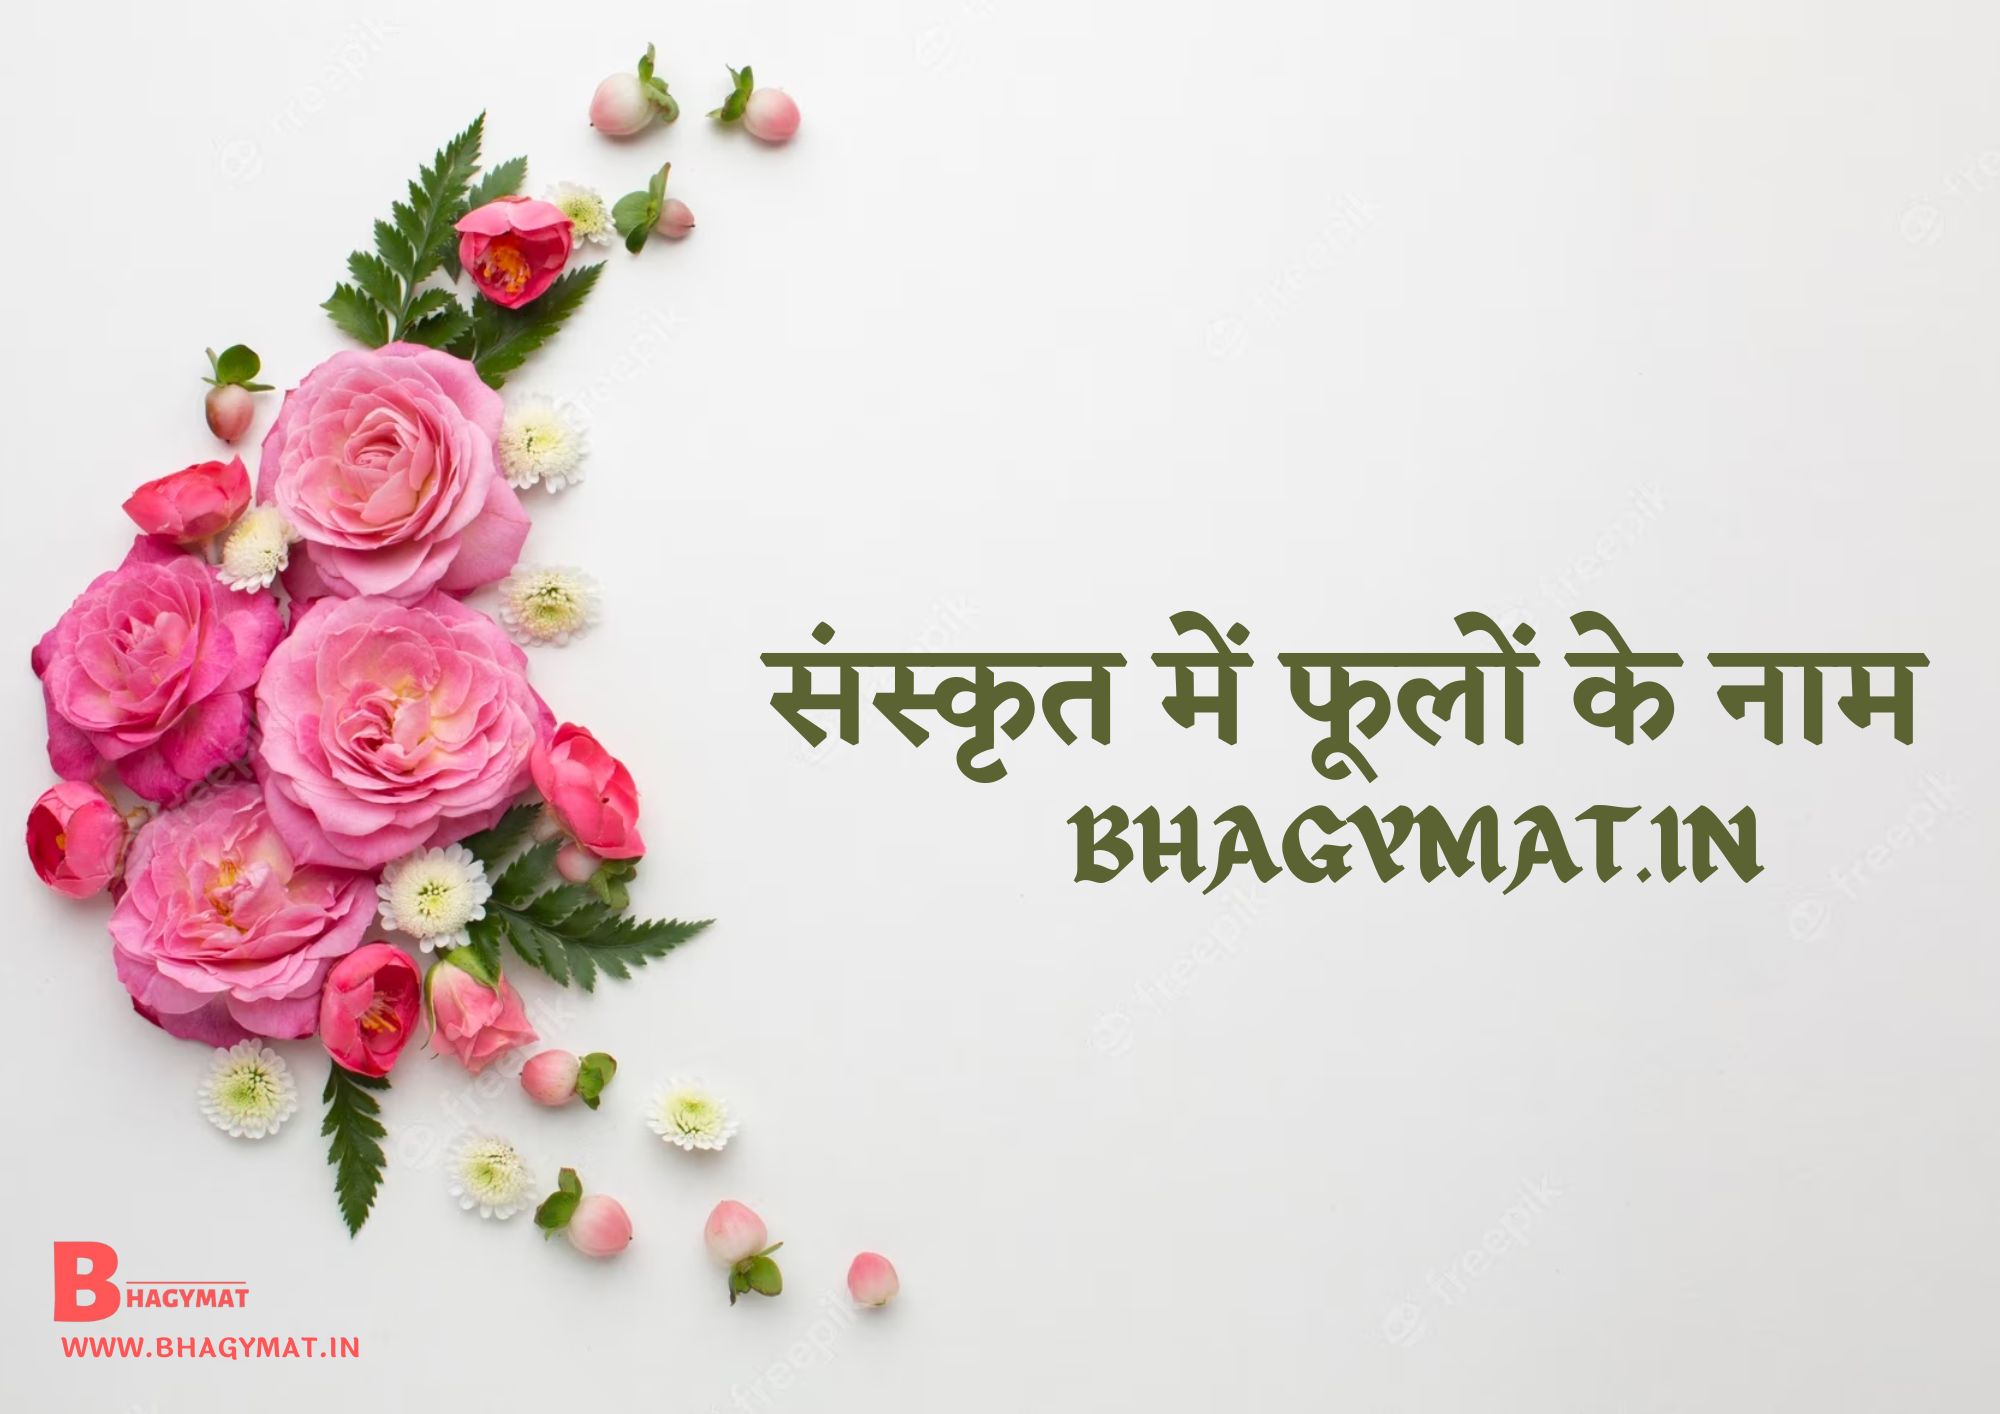 संस्कृत में फूलों के नाम (फूलों के नाम संस्कृत में) - Sanskrit Me Phoolon Ke Naam - Sanskrit Mein Phoolon Ke Naam